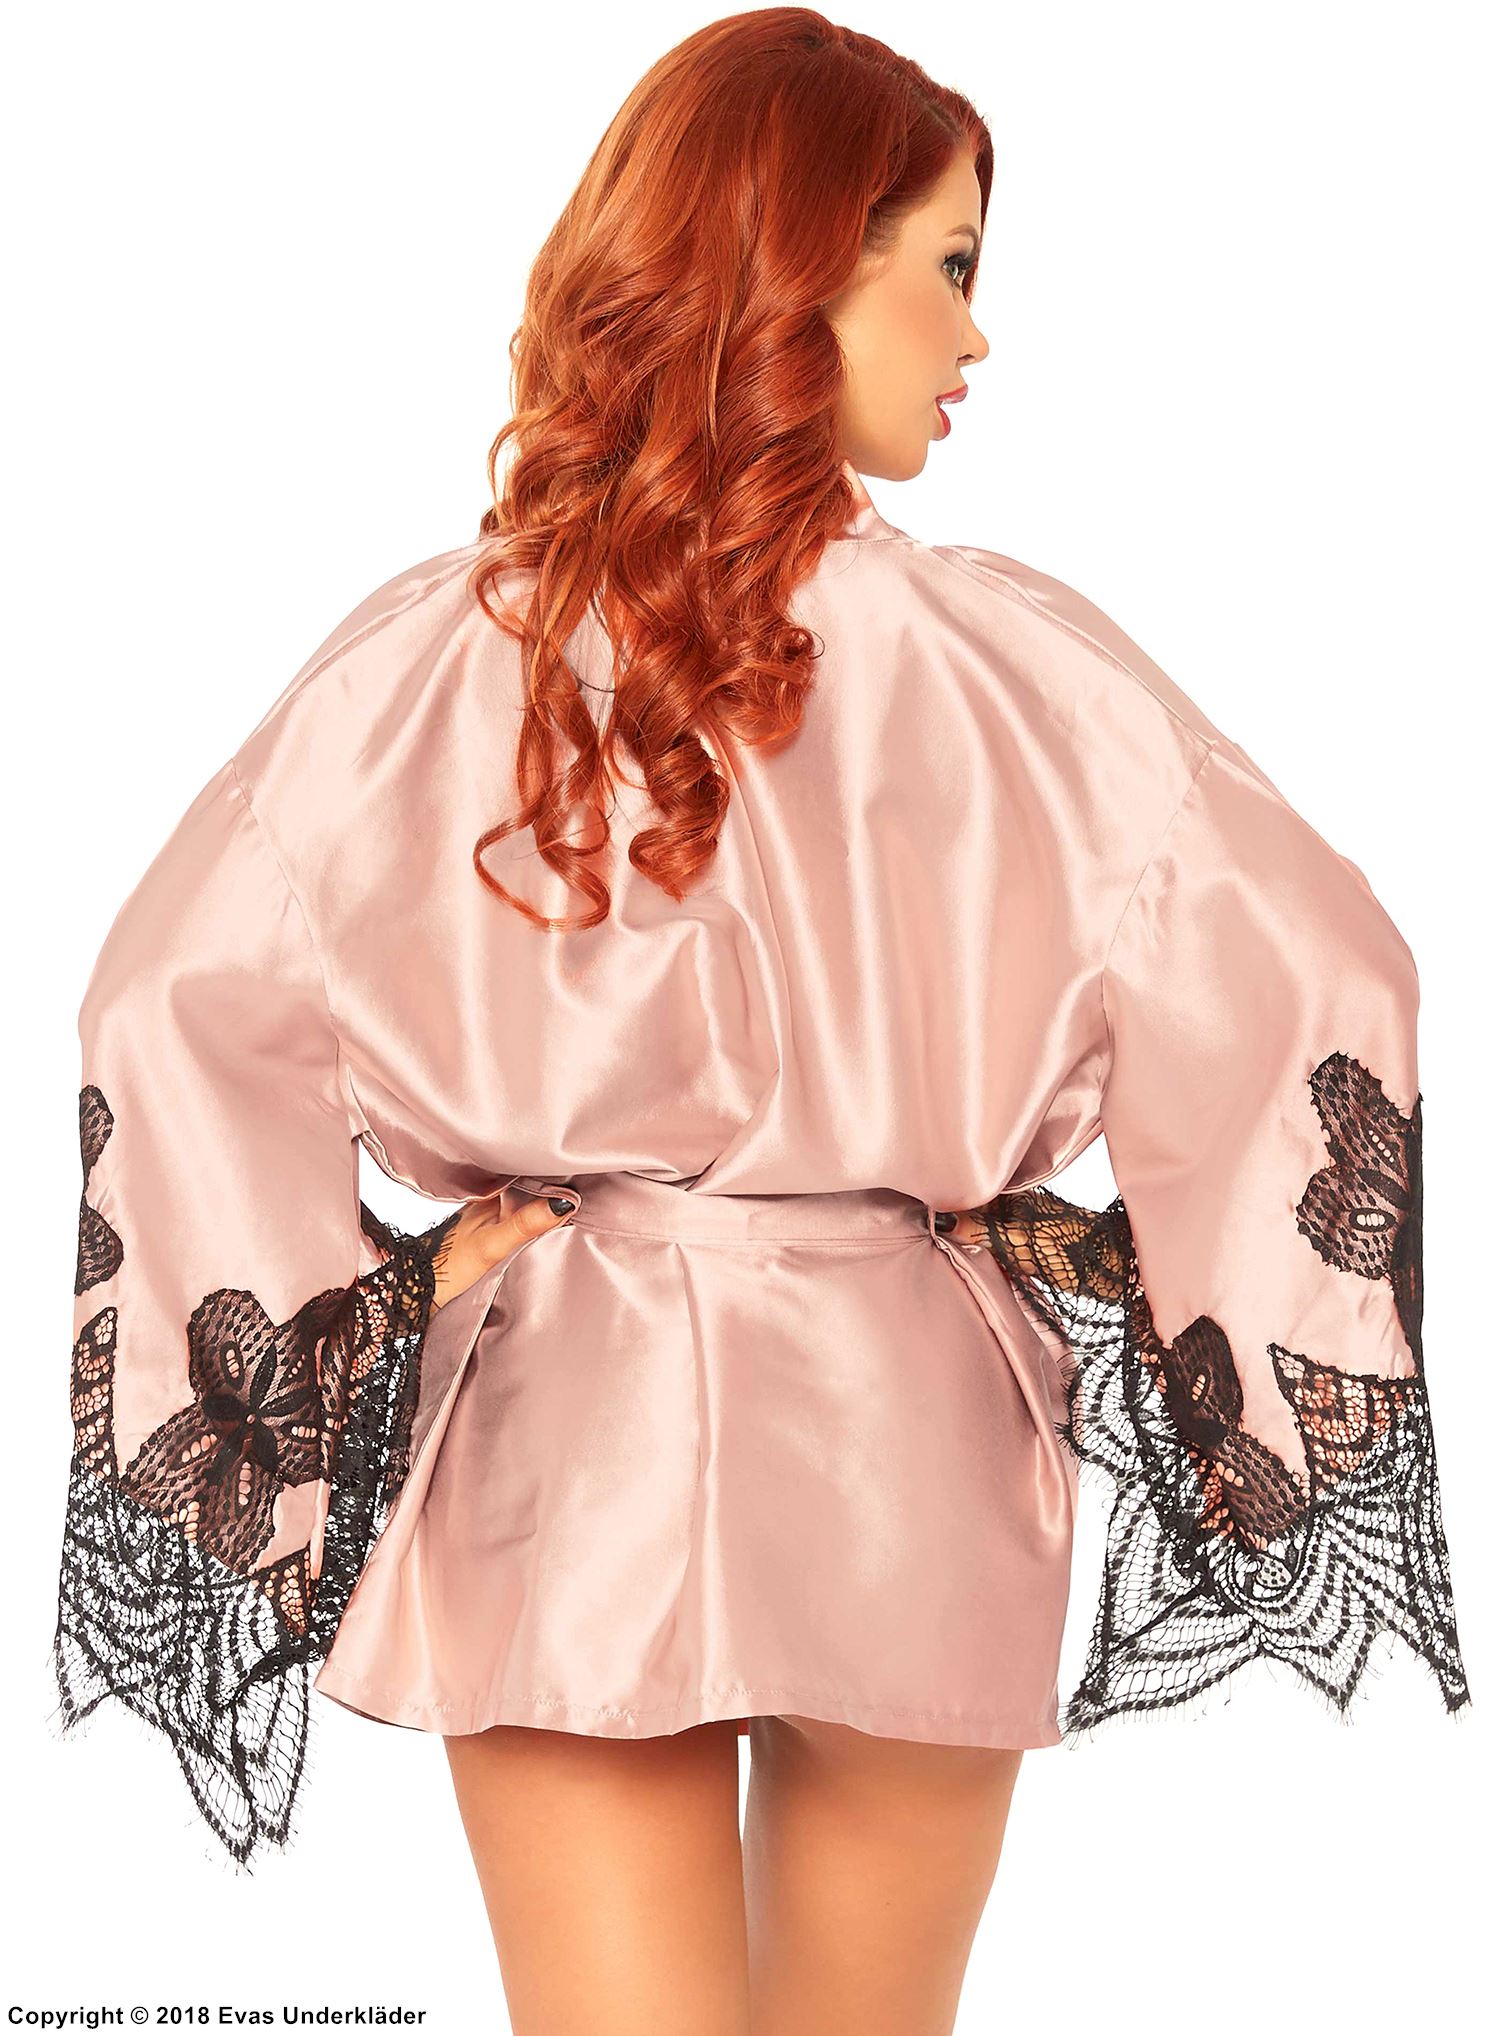 Lounge robe, satin, eyelash lace, flared sleeves